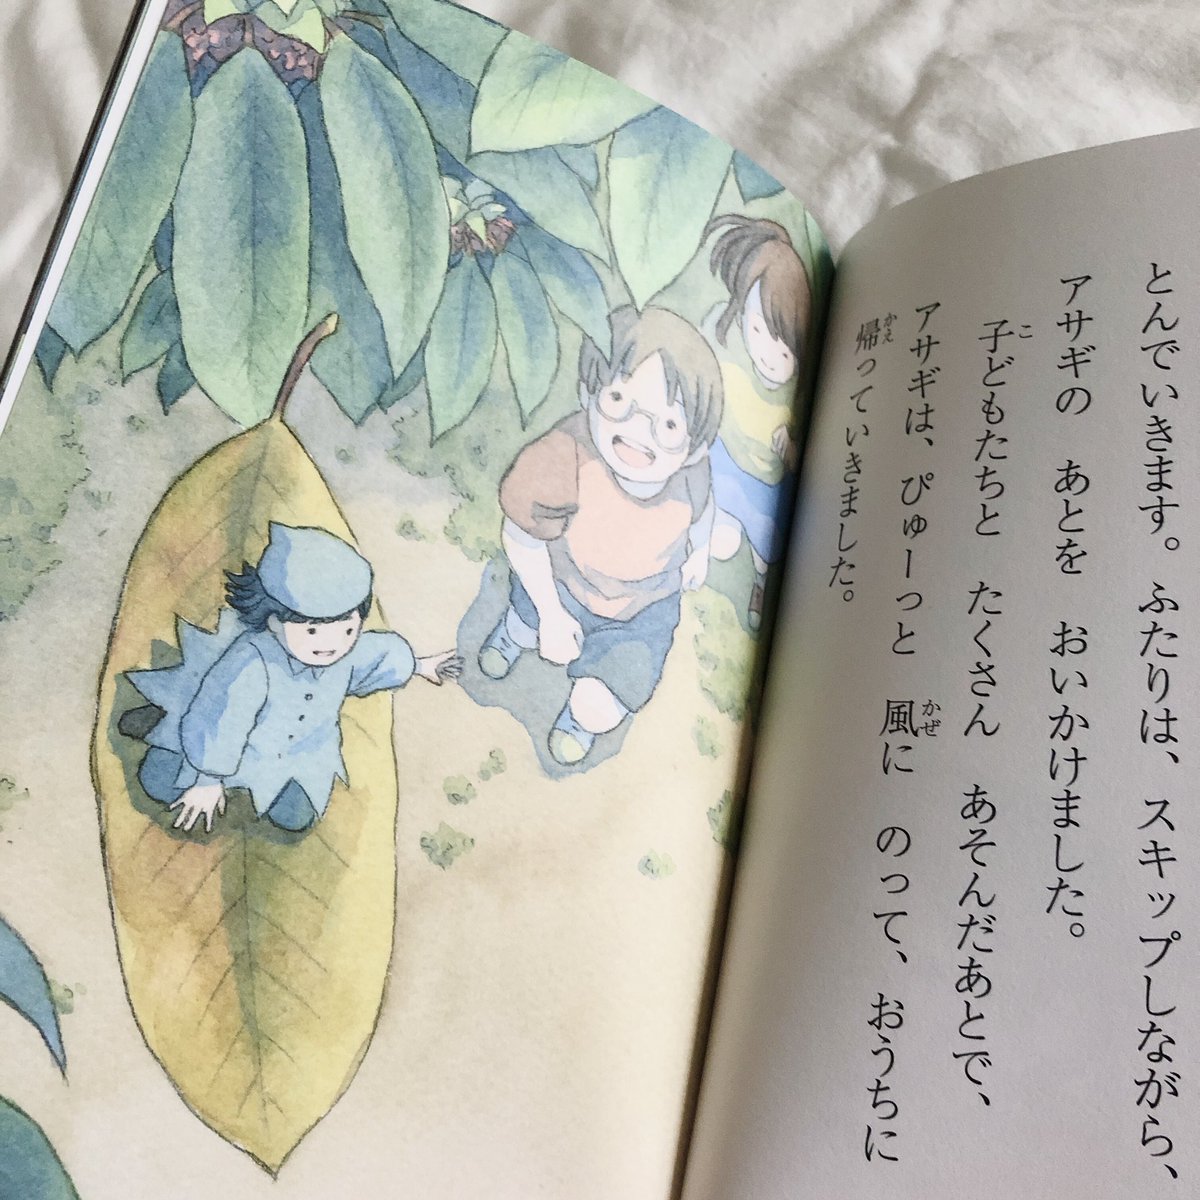 □お知らせ□
3月中旬発売の濱野京子さん作『葉っぱにのって』(金の星社)の挿画を描かせていただきました?
ずっと憧れていた挿画のお仕事ができて本当に嬉しかったです…!
葉っぱの妖精クルミと女の子の心温まる素敵な物語です?
是非お手に取っていただけたら嬉しいです 